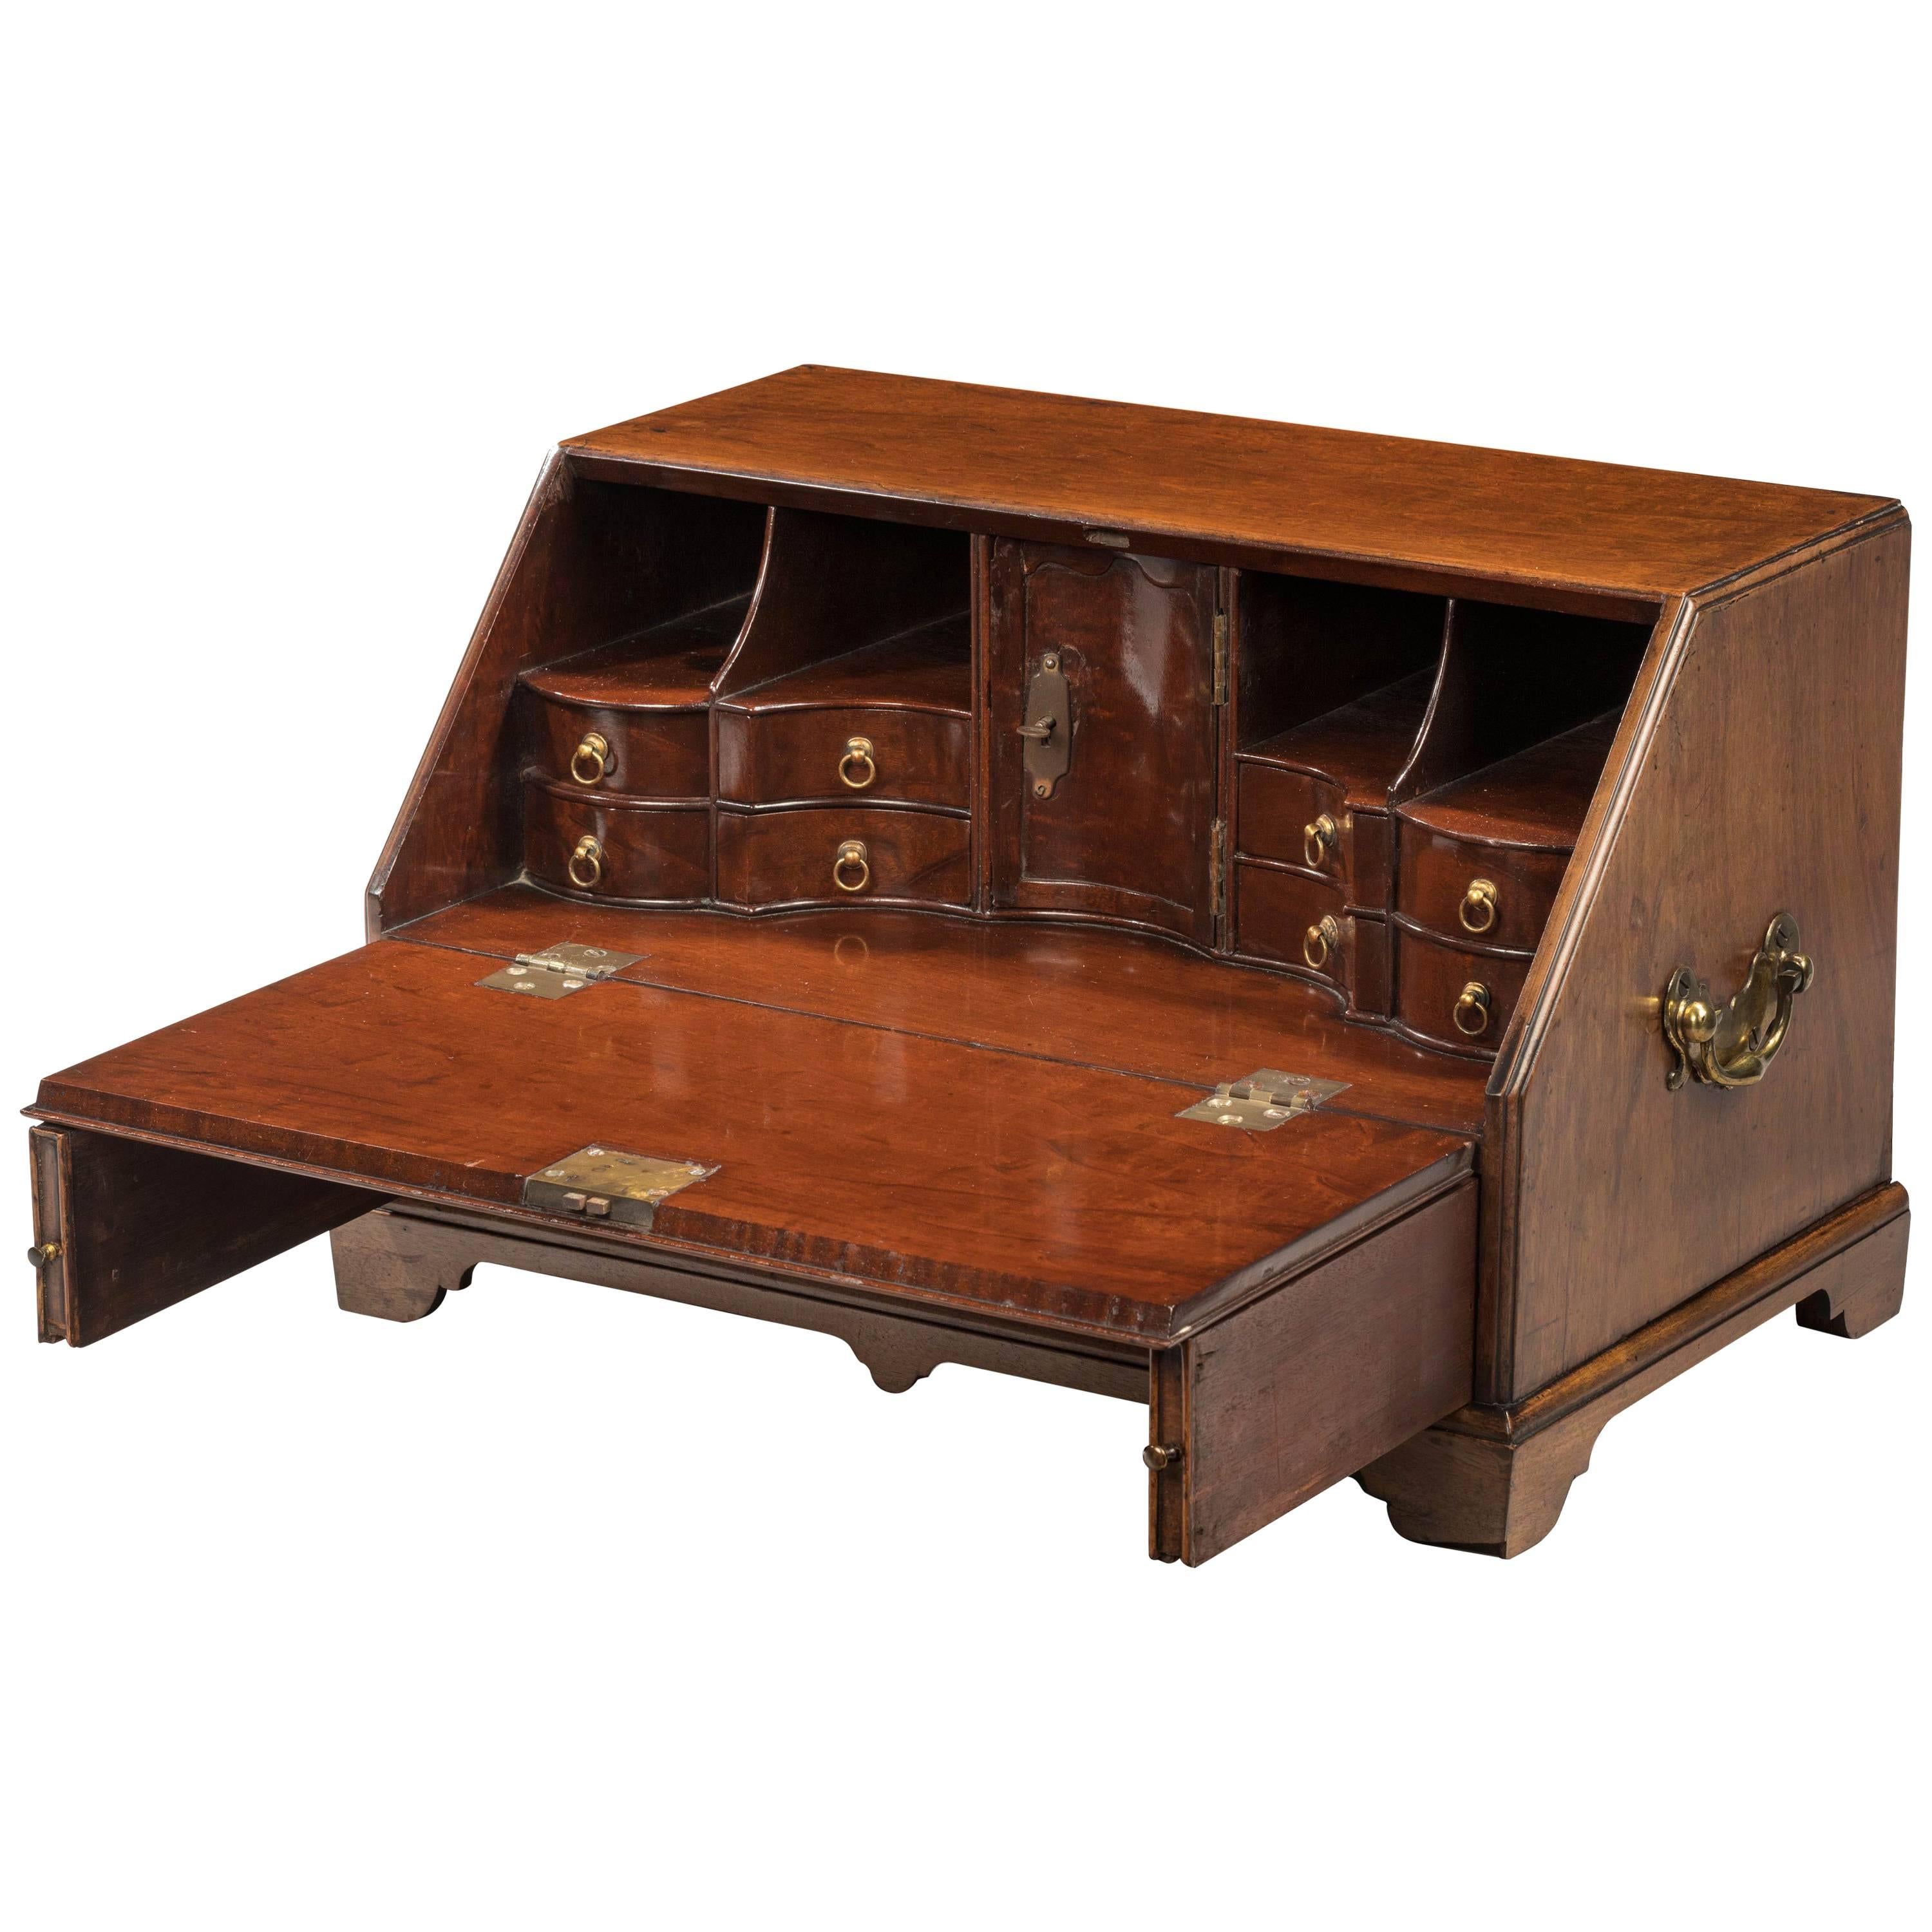 Rare George III Period Mahogany Table Bureau